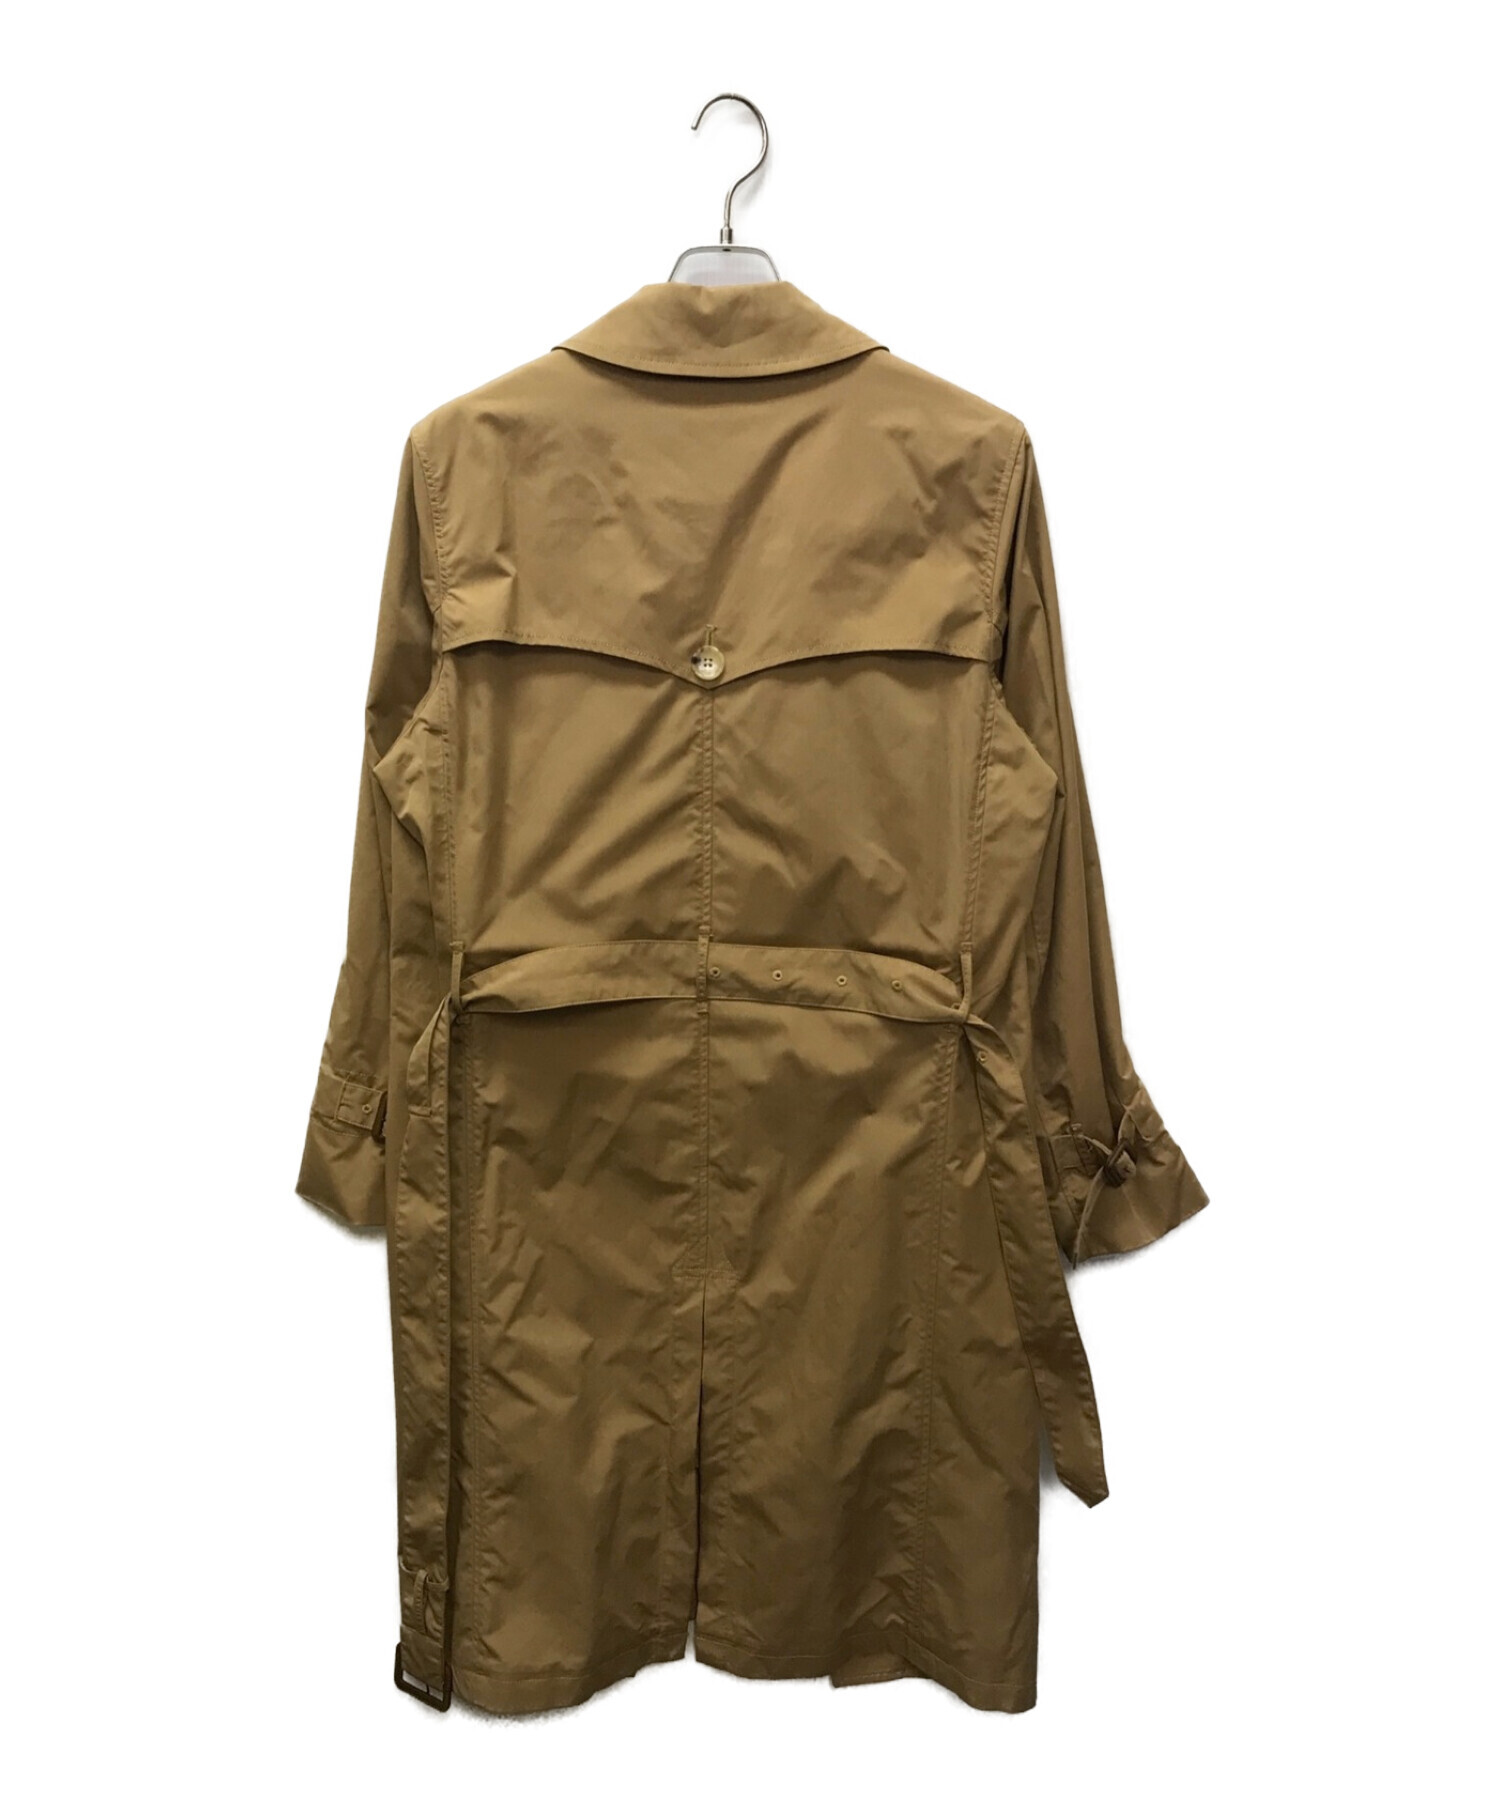 glamb (グラム) Long trench coat/ロングトレンチコート ベージュ サイズ:S